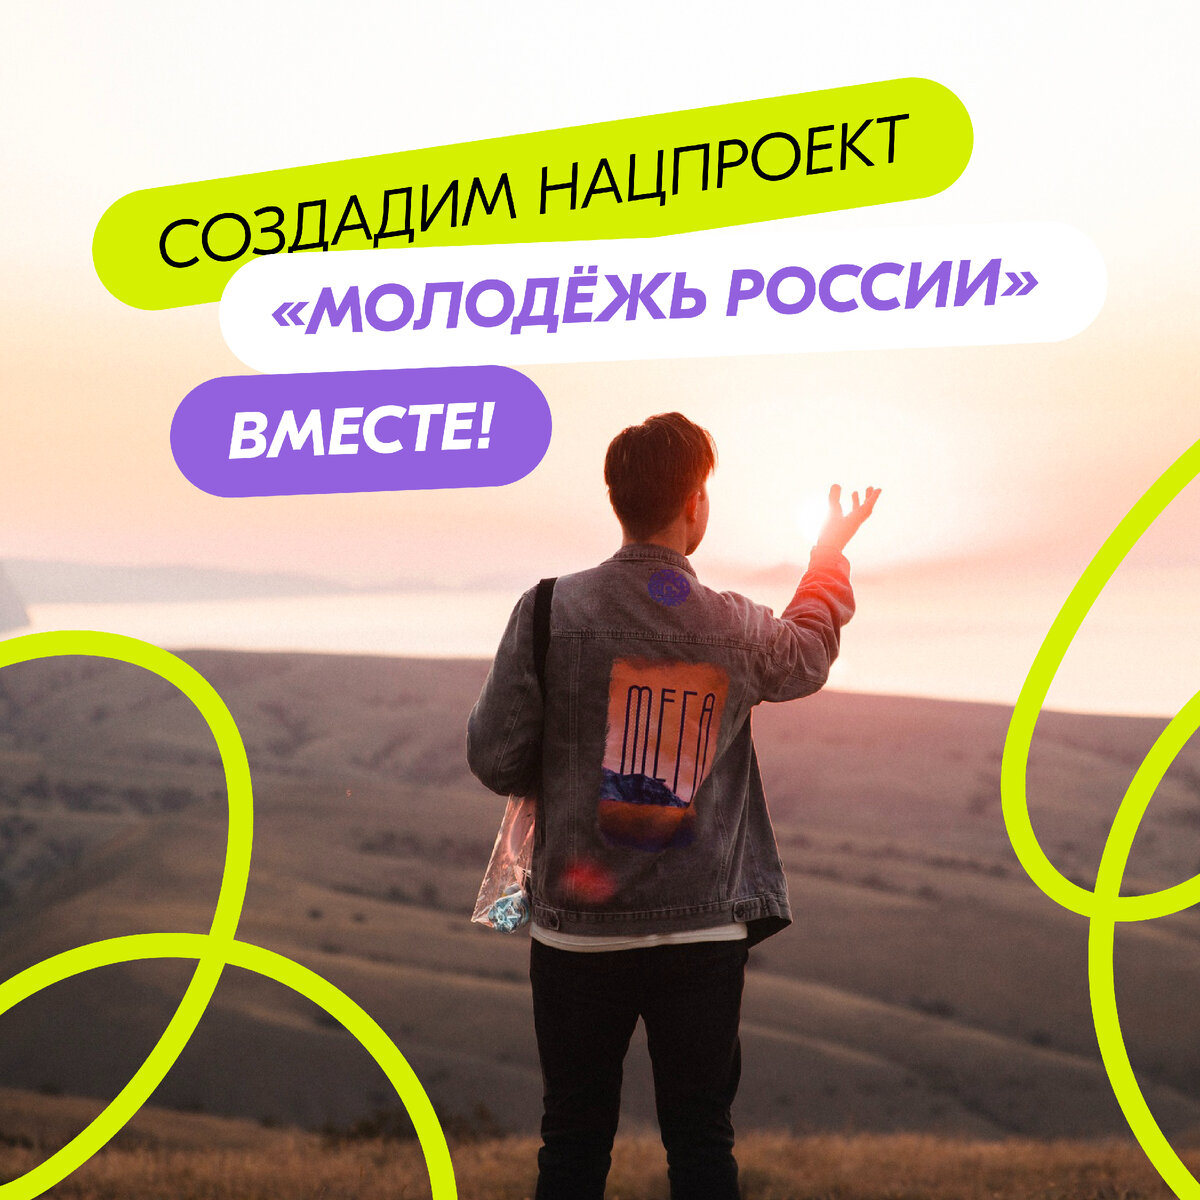 Россияне могут стать соавторами нового национального проекта «Молодёжь России». Для этого нужно подать свою идею на Госуслугах в открытом сборе предложений.

Приём инициатив продлится до 1 апреля!